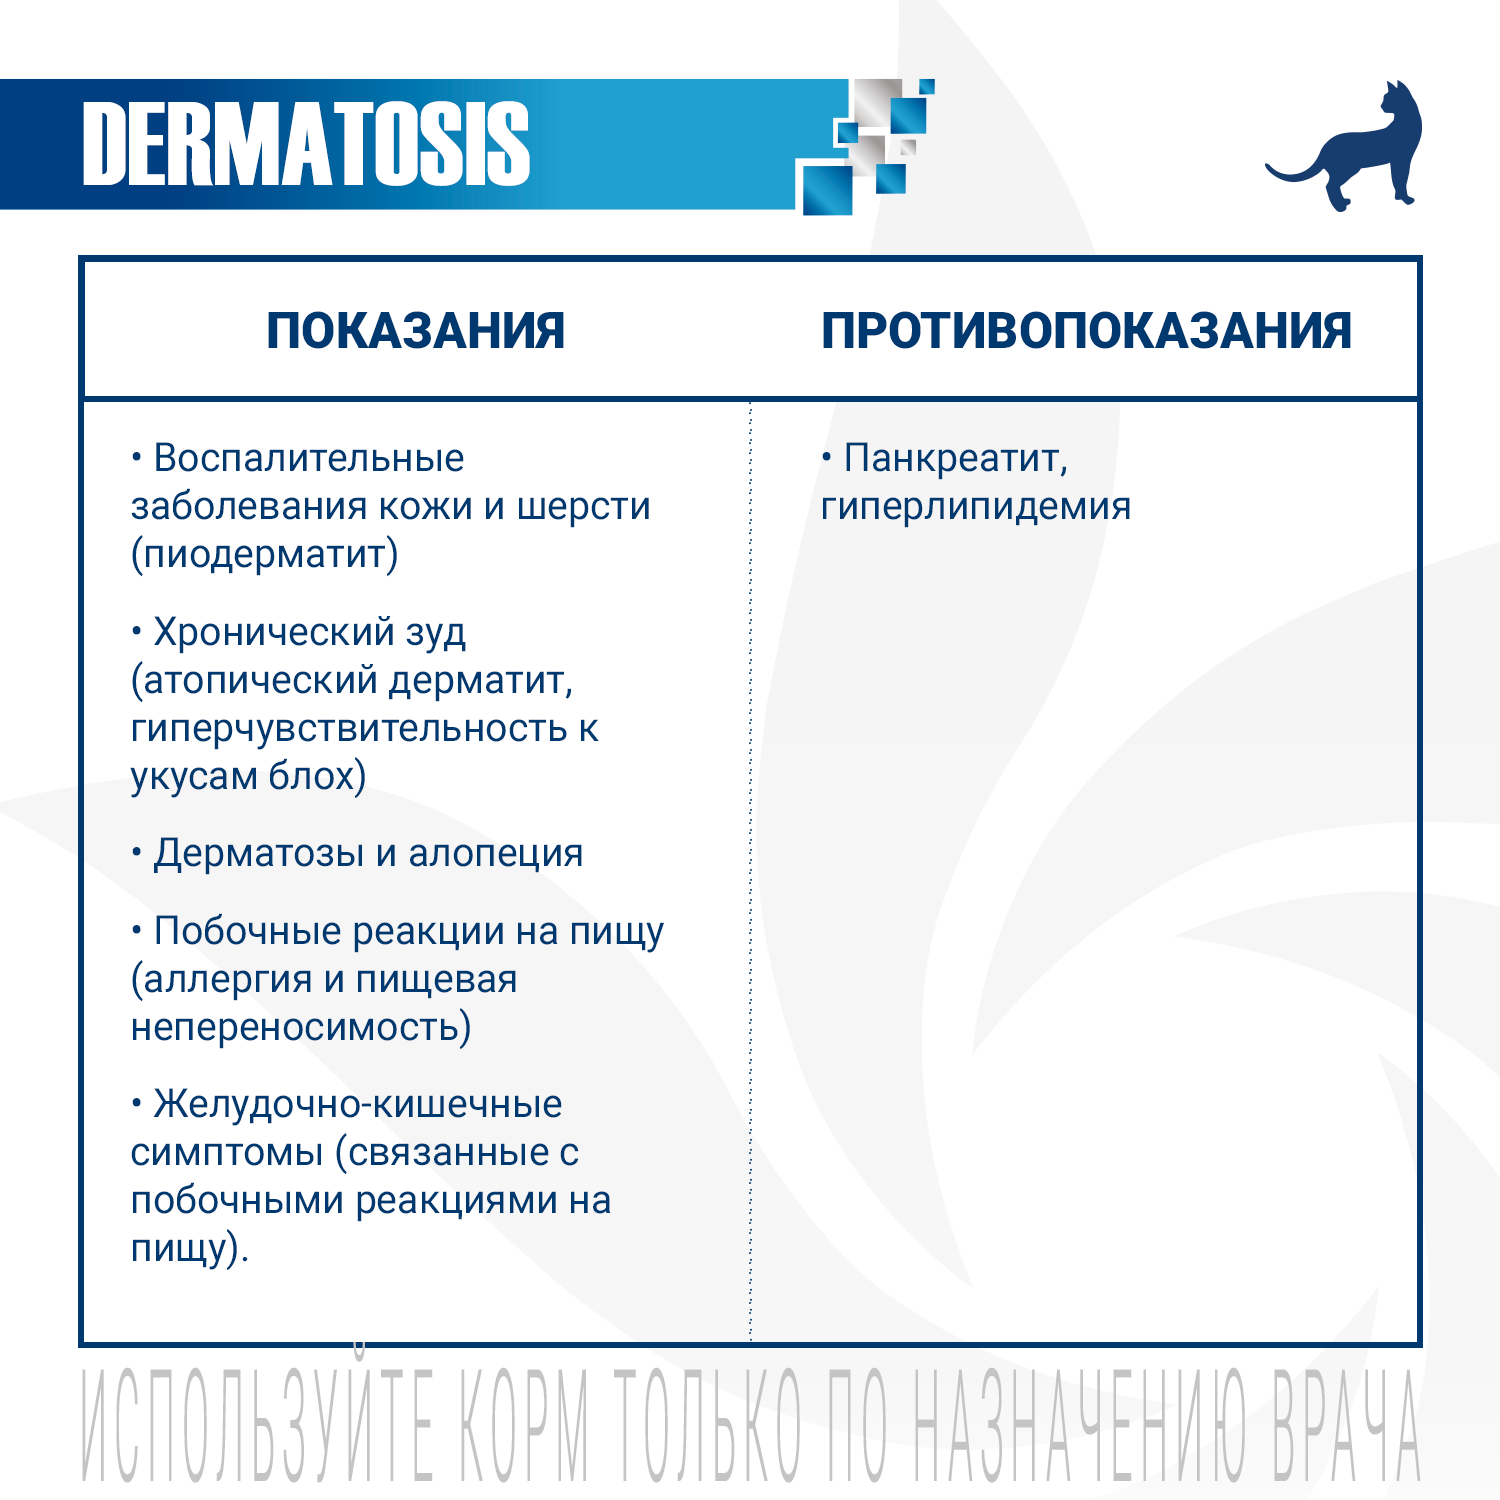 Ветеринарная диета Monge VetSolution Cat Dermatosis Дерматозис для кошек при заболеваниях кожи 400 г